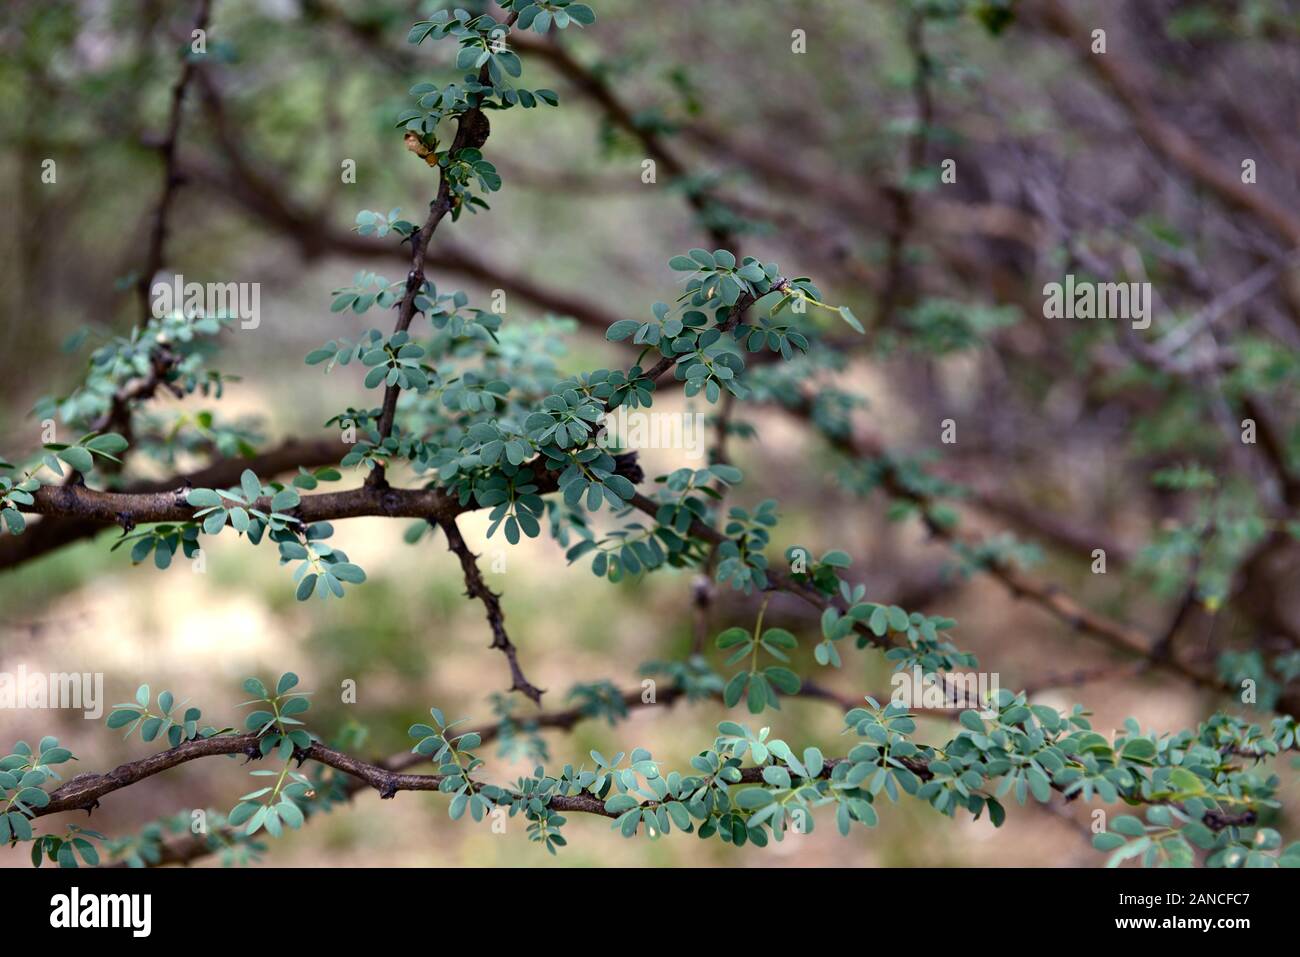 Senegalia,Acacia mellifera mellifera,common thorn tree, prunellier, Swarthaak,plantes,de plantes indigènes de Namibie Namibie,Fleurs,RM Banque D'Images